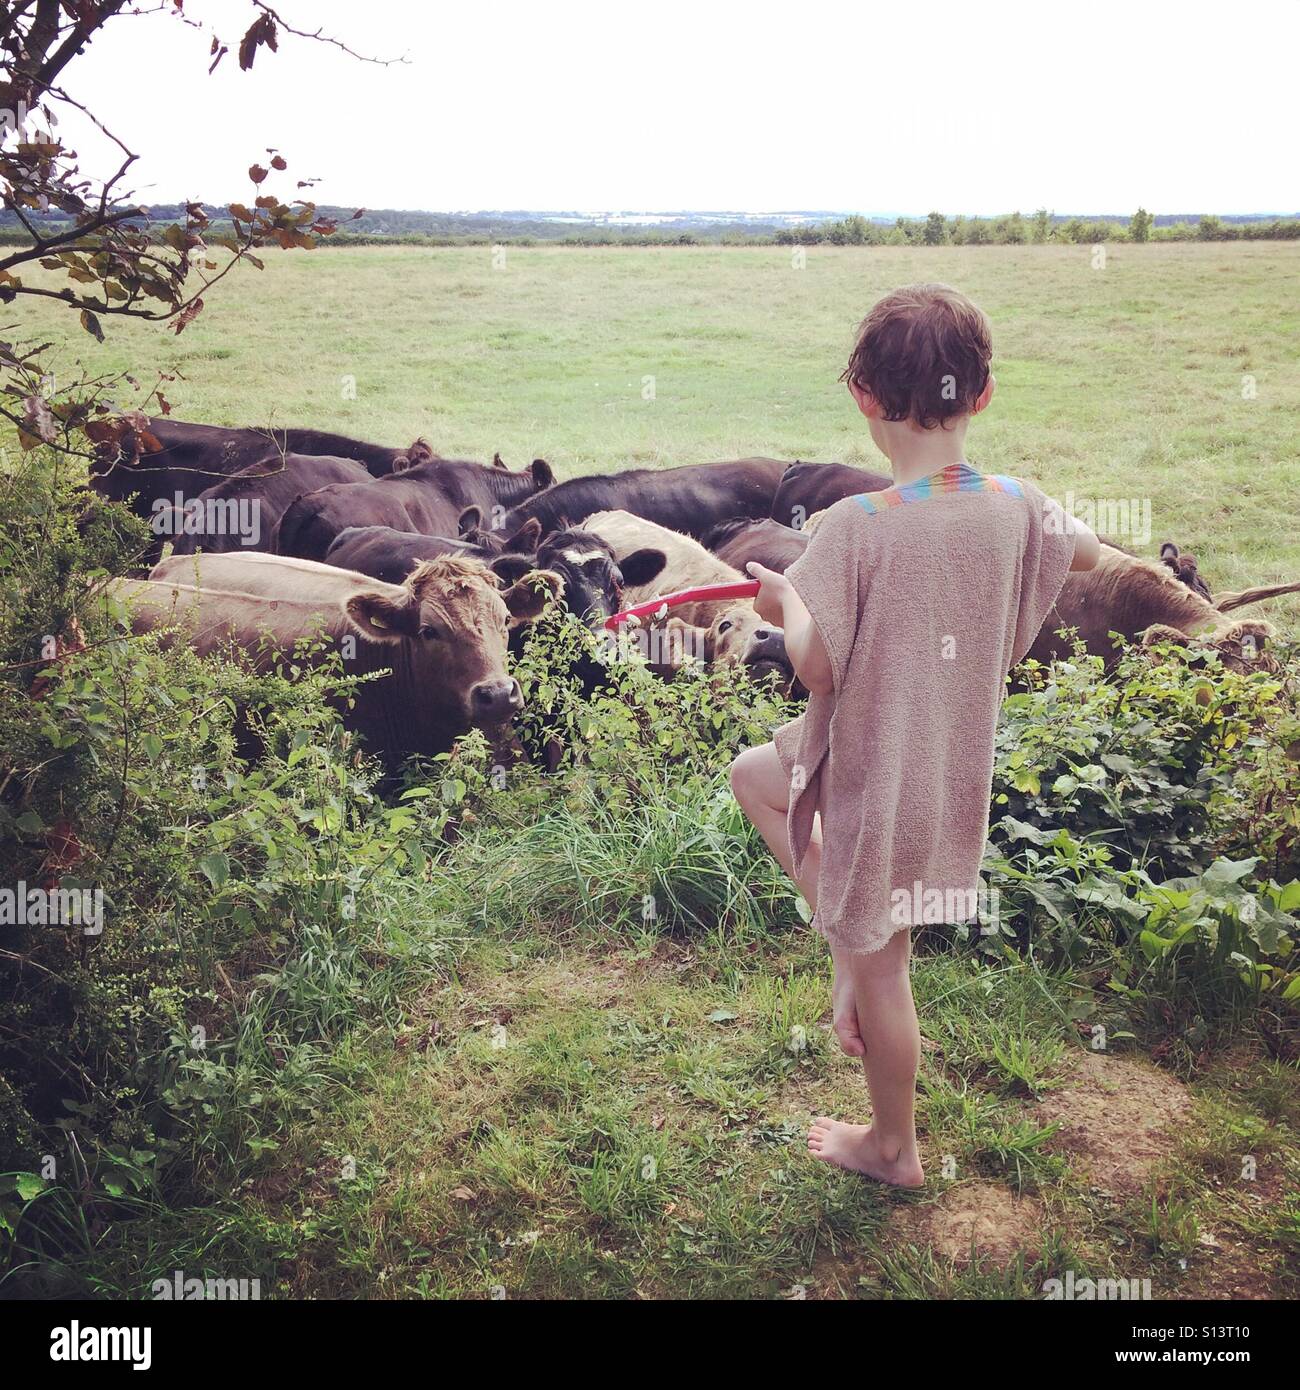 Sieben Jahre alten Jungen spielen eine Ukulele, ein gehört der Kühe. Stockfoto